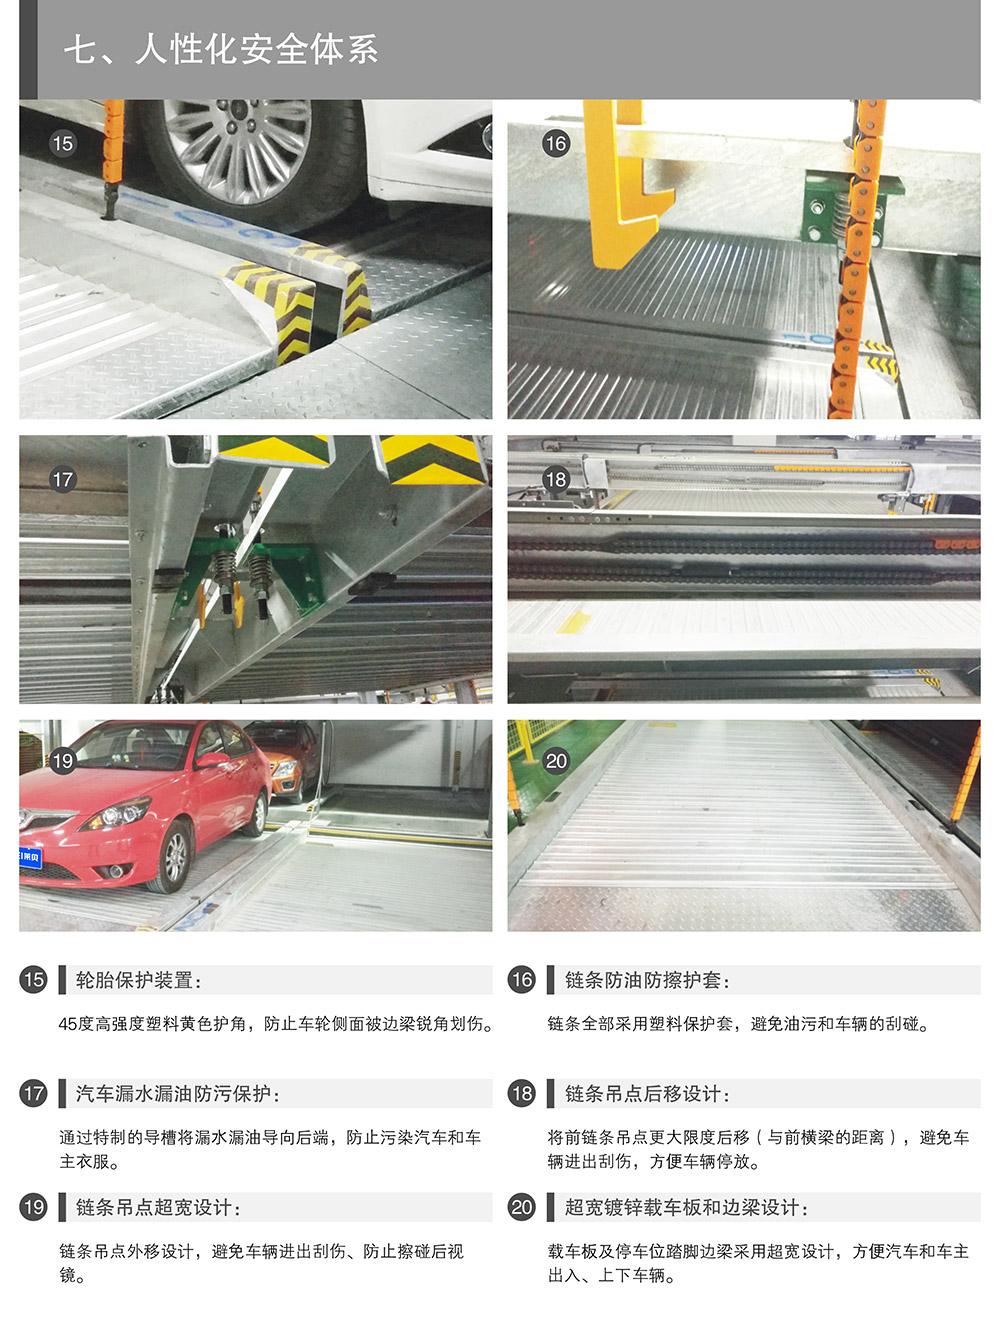 贵州贵阳负一正一地坑PSH2D1二层升降横移立体停车设备人性化安全体系.jpg